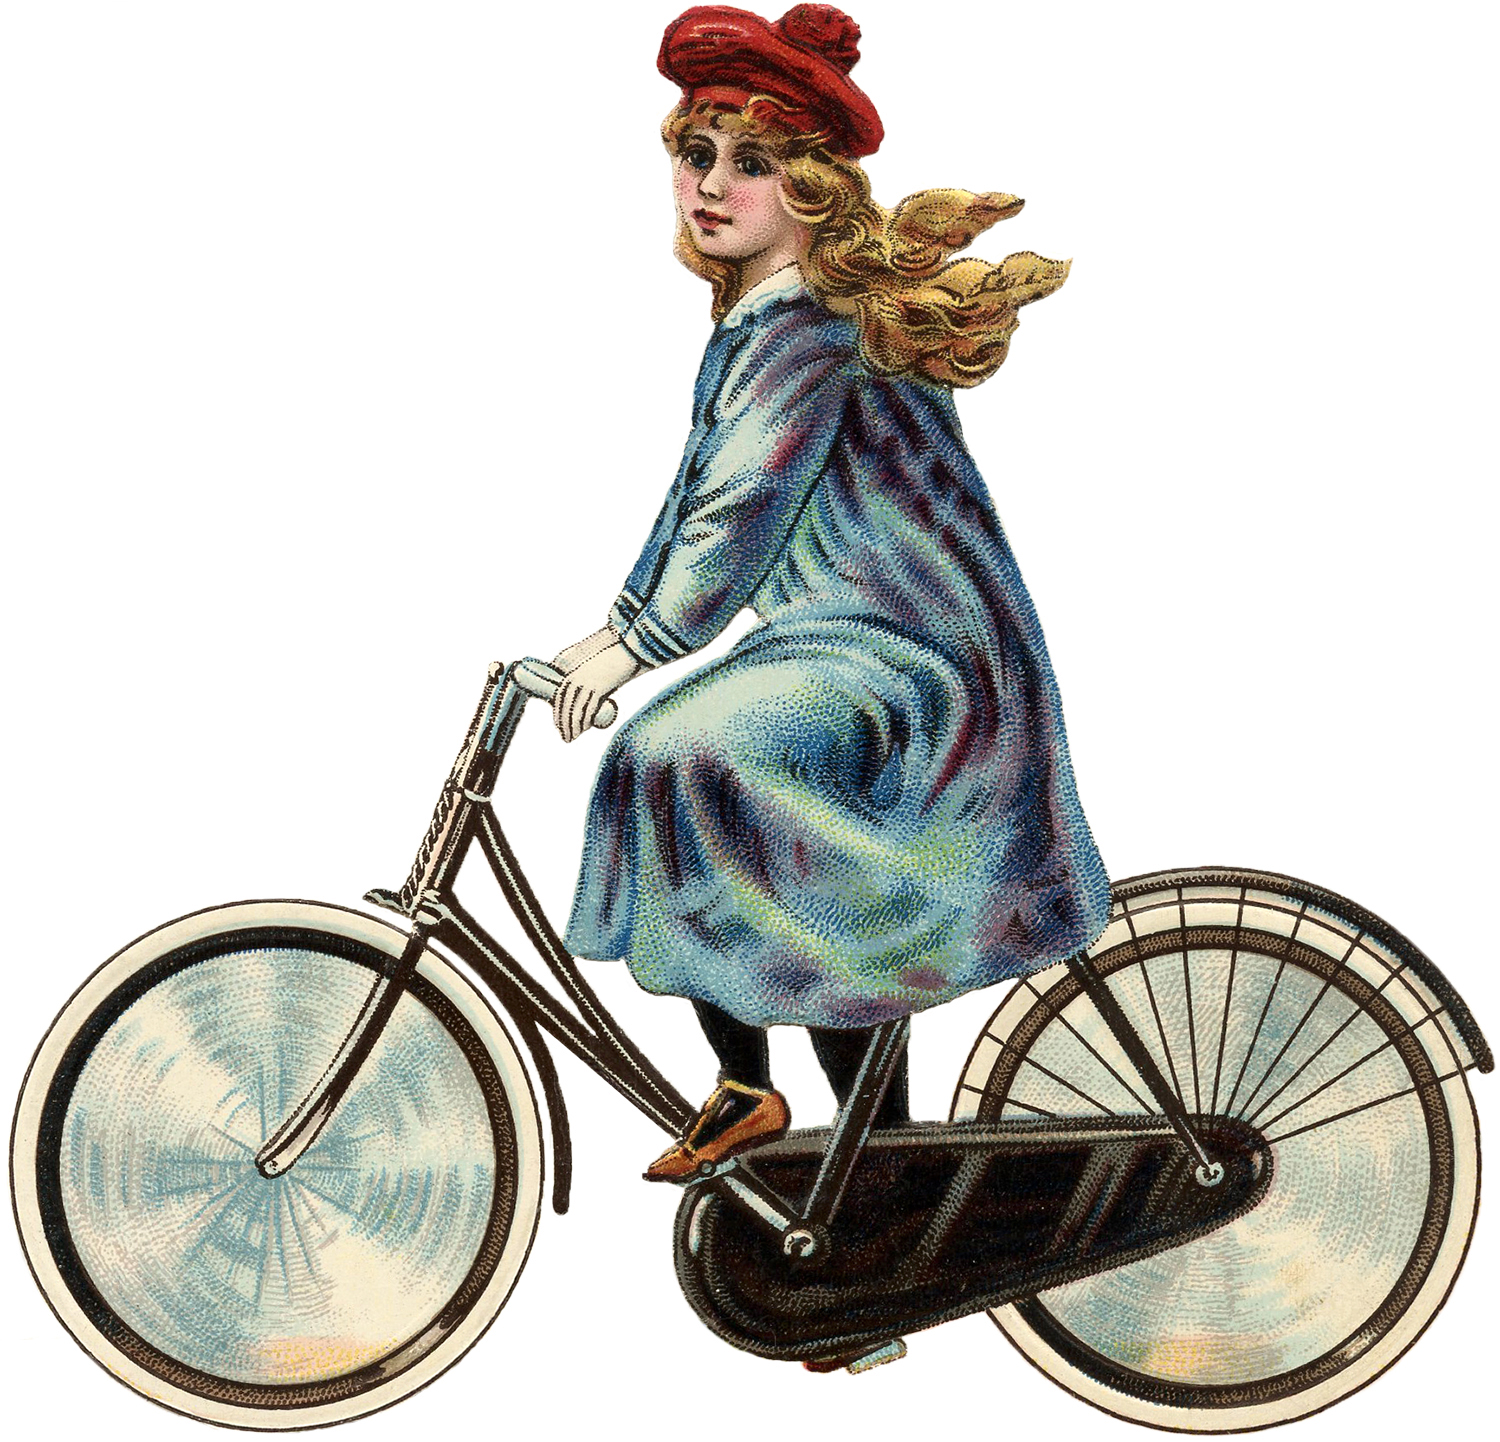 girl on bike clipart - photo #37